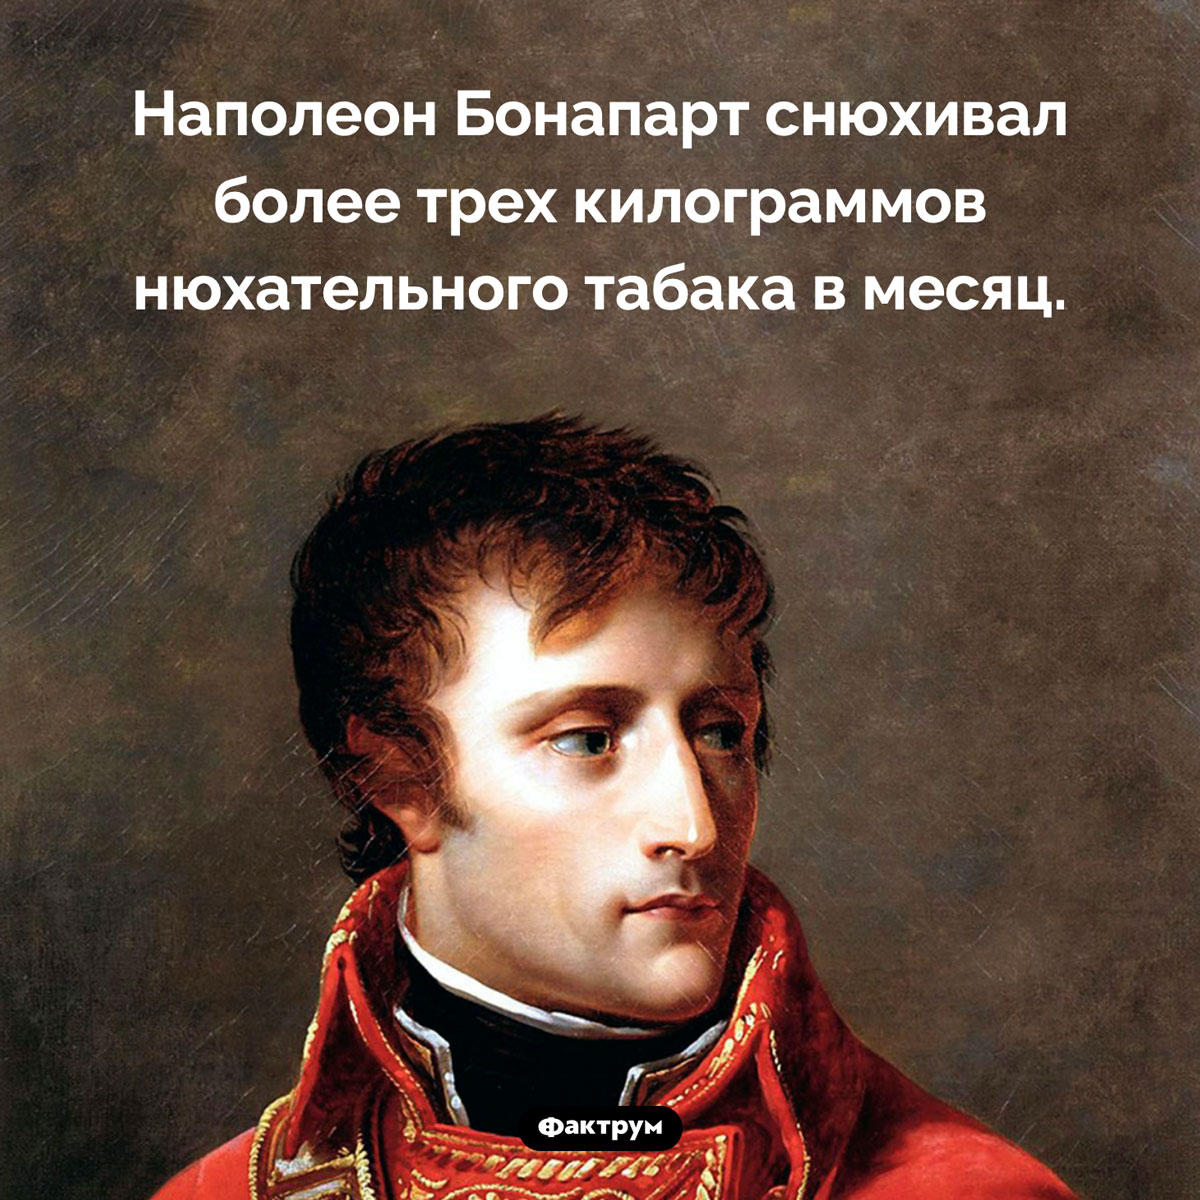 Наполеон Бонапарт любил нюхательный табак. Наполеон Бонапарт снюхивал более трех килограммов нюхательного табака в месяц.